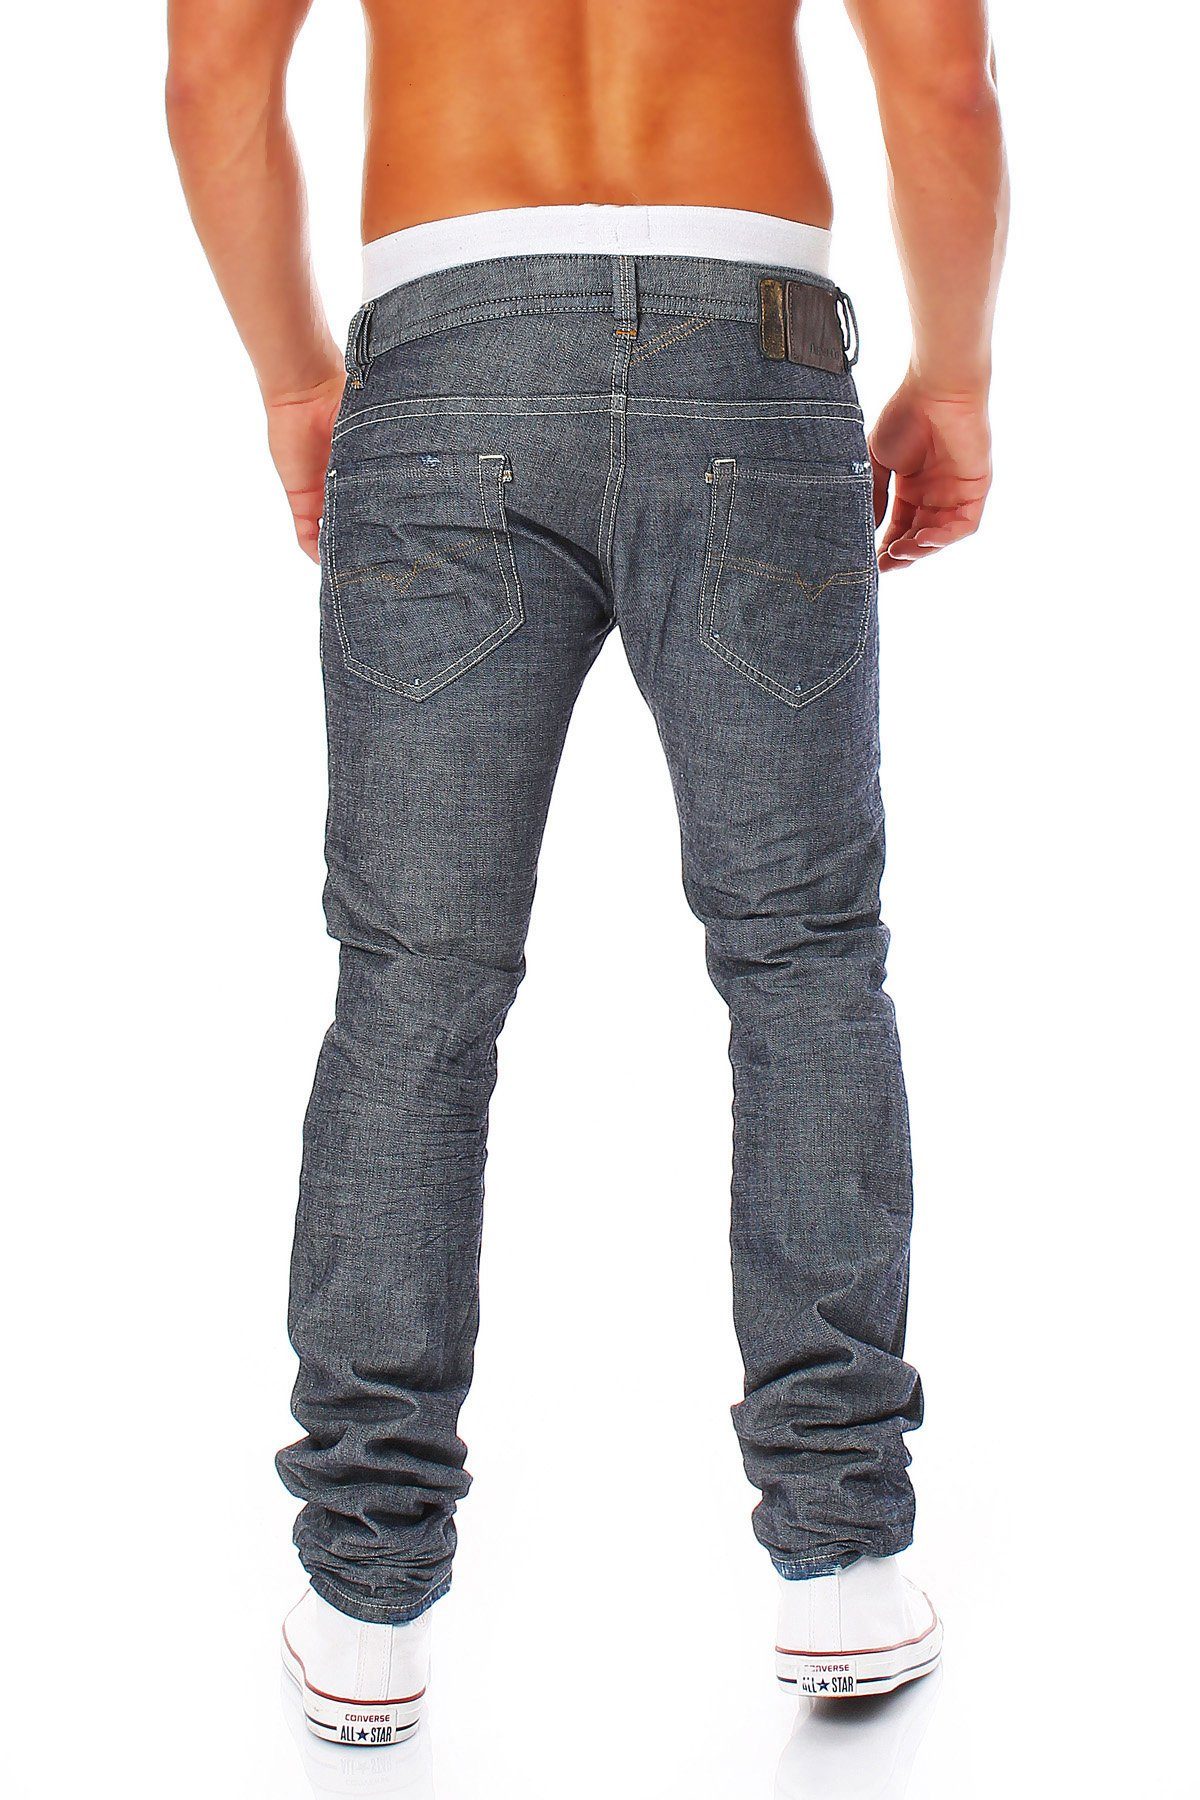 Diesel Slim-fit-Jeans Style, Thavar Dezenter Röhrenjeans, Blau-Grau, 5 Pocket Herren Used-Look 0809D